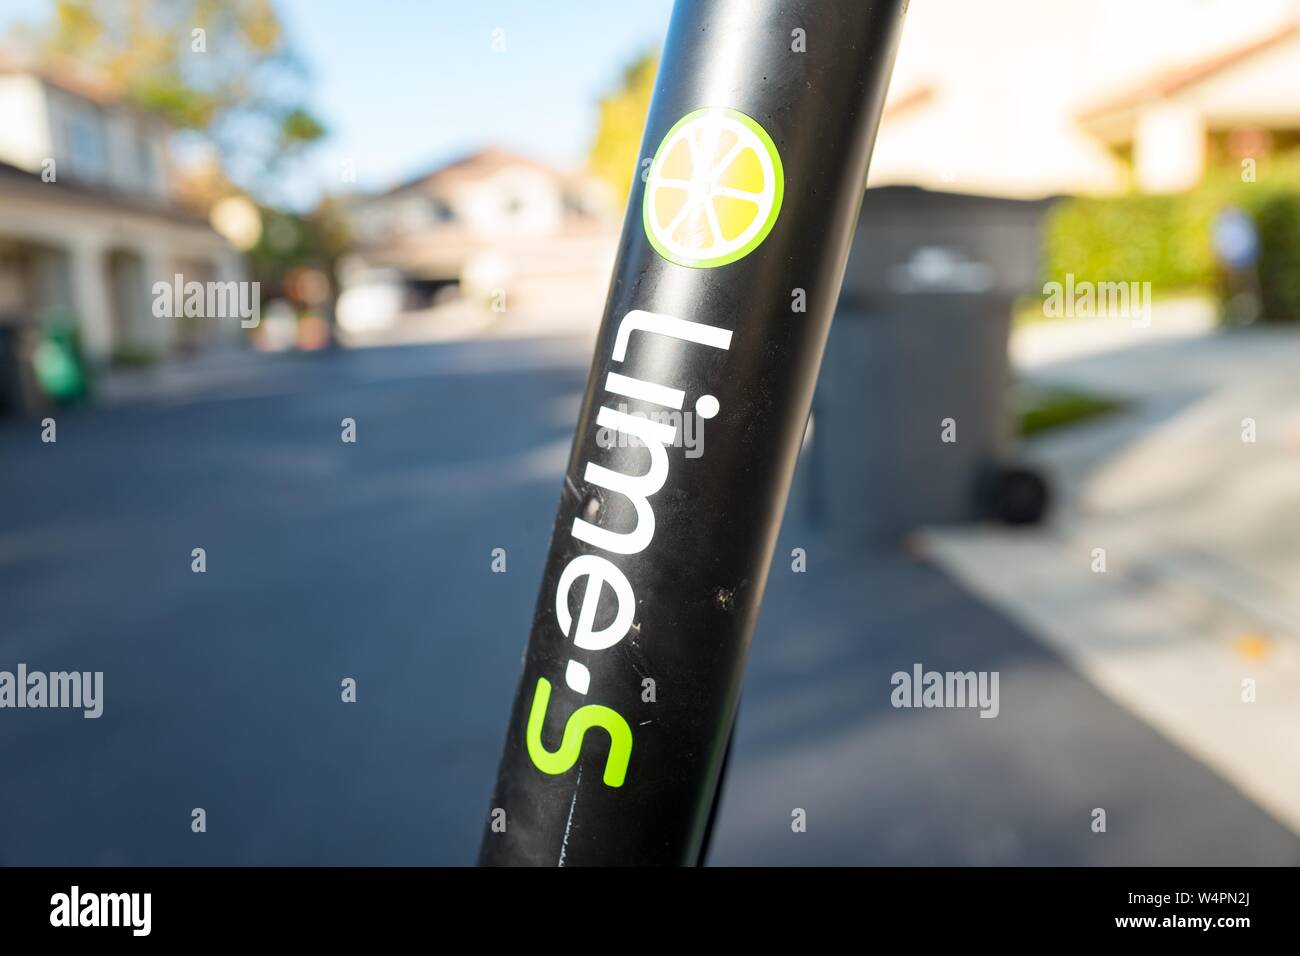 Close-up de la barra vertical de un scooter eléctrico dockless Cal en San Ramón, California estacionada sobre una superficie de asfalto, con logotipo y cal-S marca visible, 18 de octubre de 2018. () Foto de stock